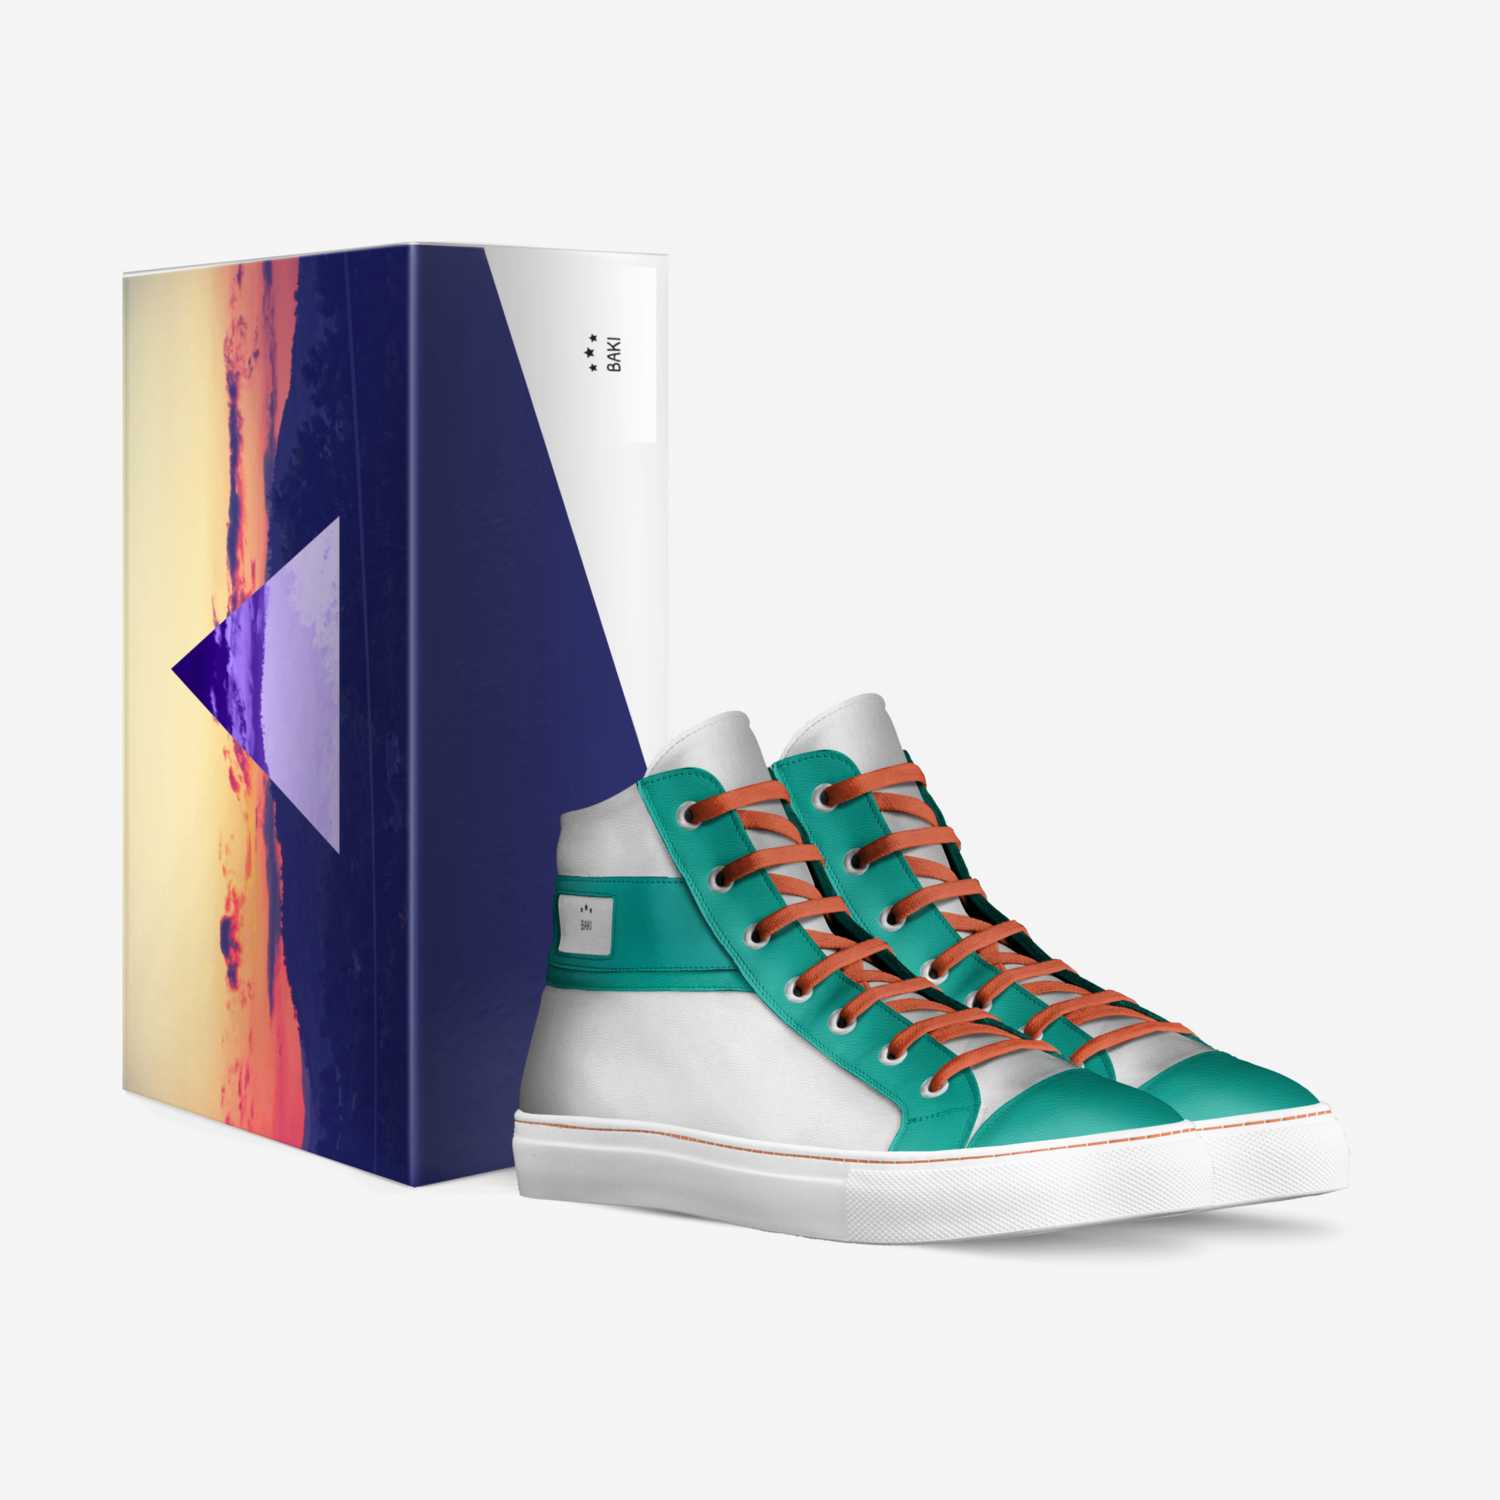 BAKI custom made in Italy shoes by Shakara Jackson | Box view